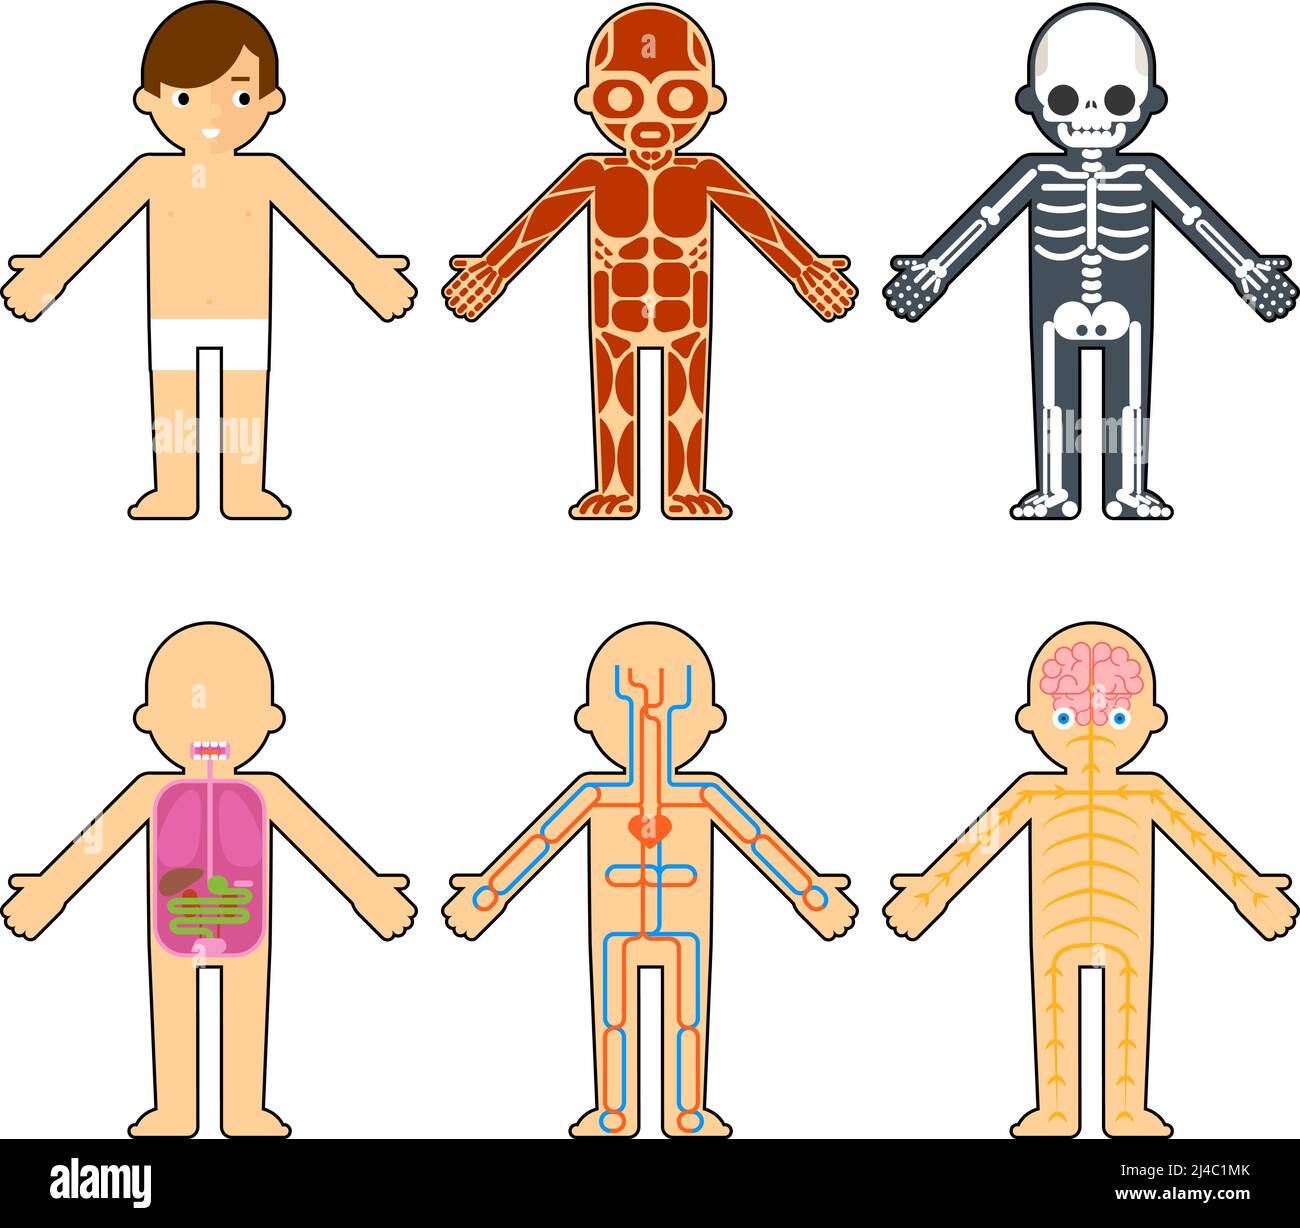 Körperanatomie für Kinder. Das Skelett und die Muskeln, das Nervensystem und das Kreislaufsystem Infografiken Elemente Stock Vektor